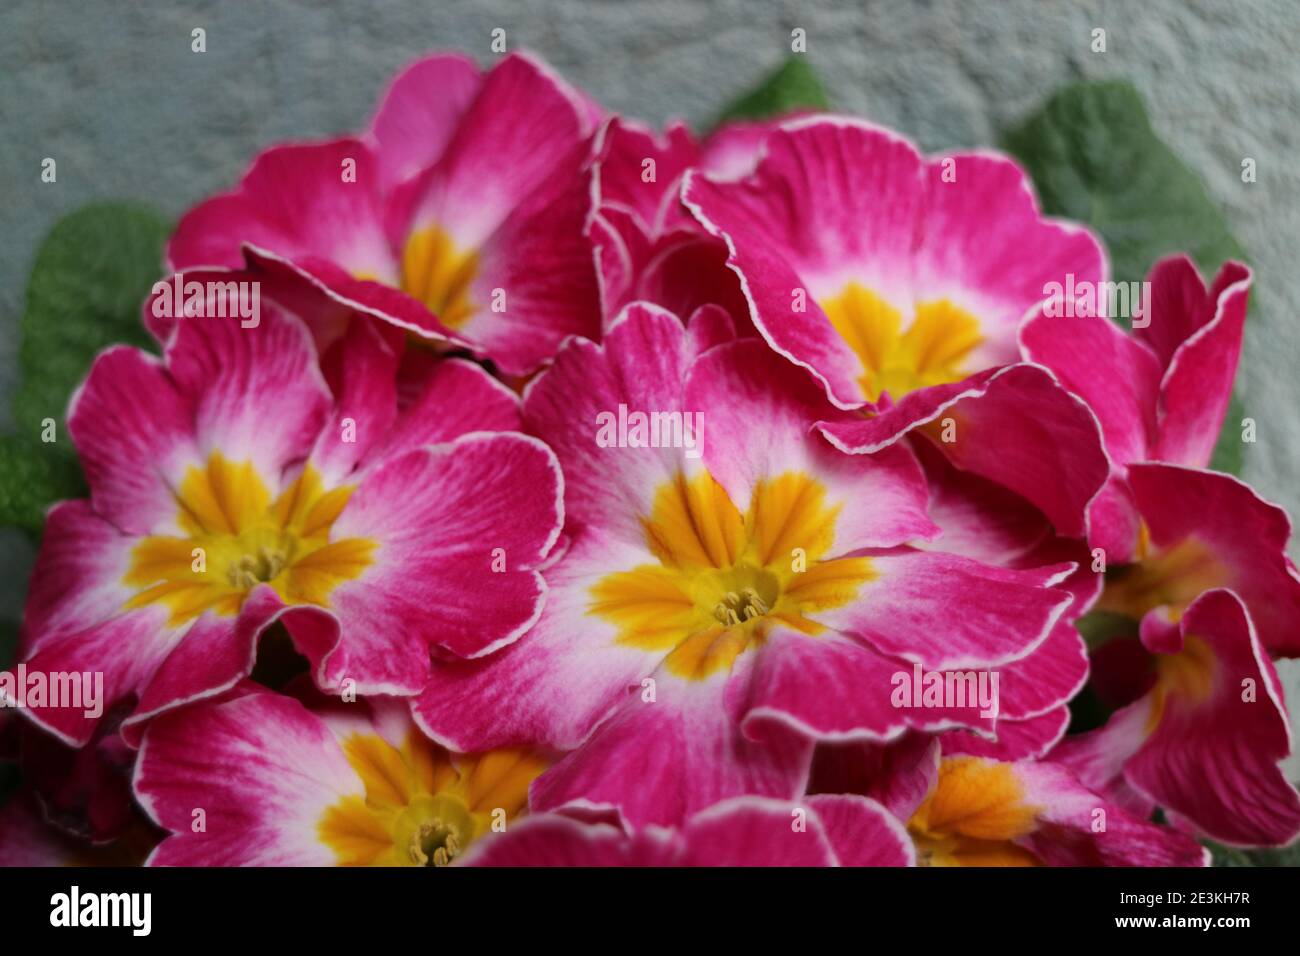 Rosa Primula mit gelben Staubgefäßen und grünen Blättern, rosa primula Makro, Schönheit in der Natur, Blumenfoto, Makrofotografie, Stock Bild Stockfoto